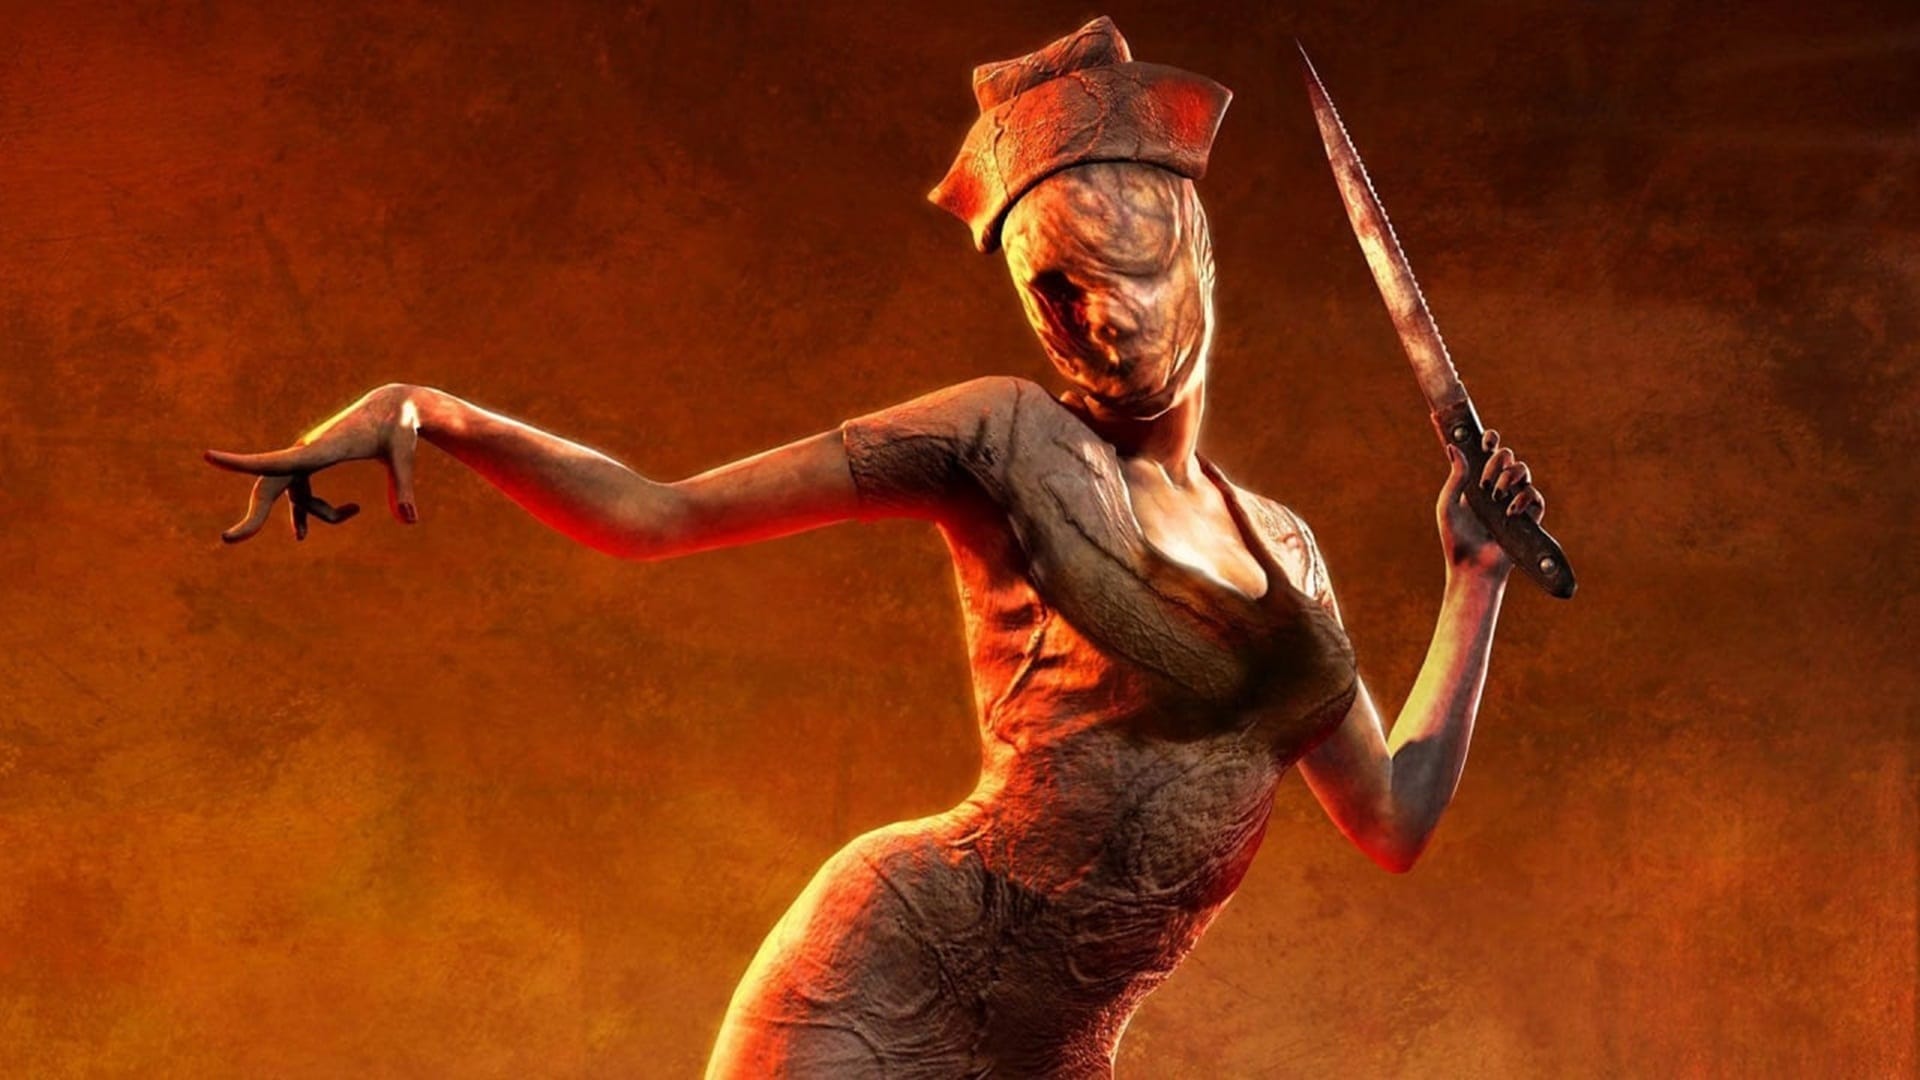 Imágenes filtradas aparentemente mostraron un nuevo Silent Hill antes de ser eliminadas, GamersRD